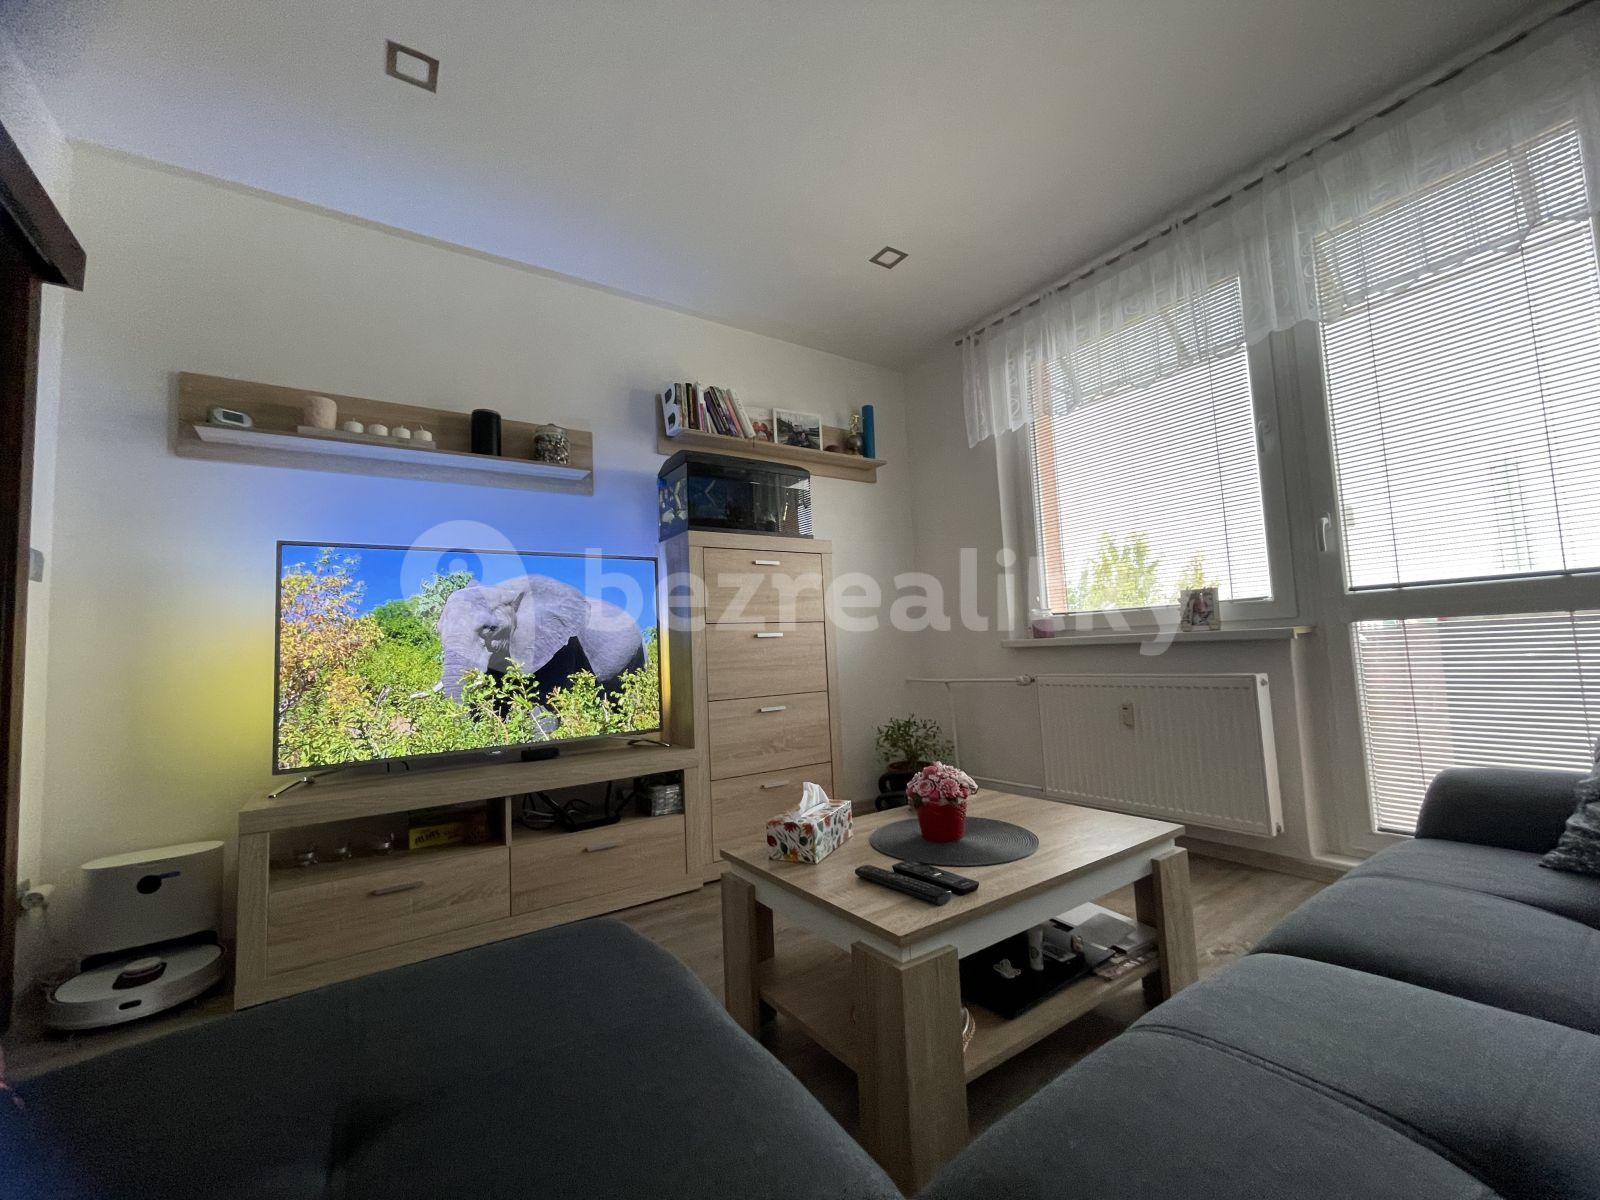 2 bedroom flat to rent, 54 m², Sídliště, Moravský Krumlov, Jihomoravský Region